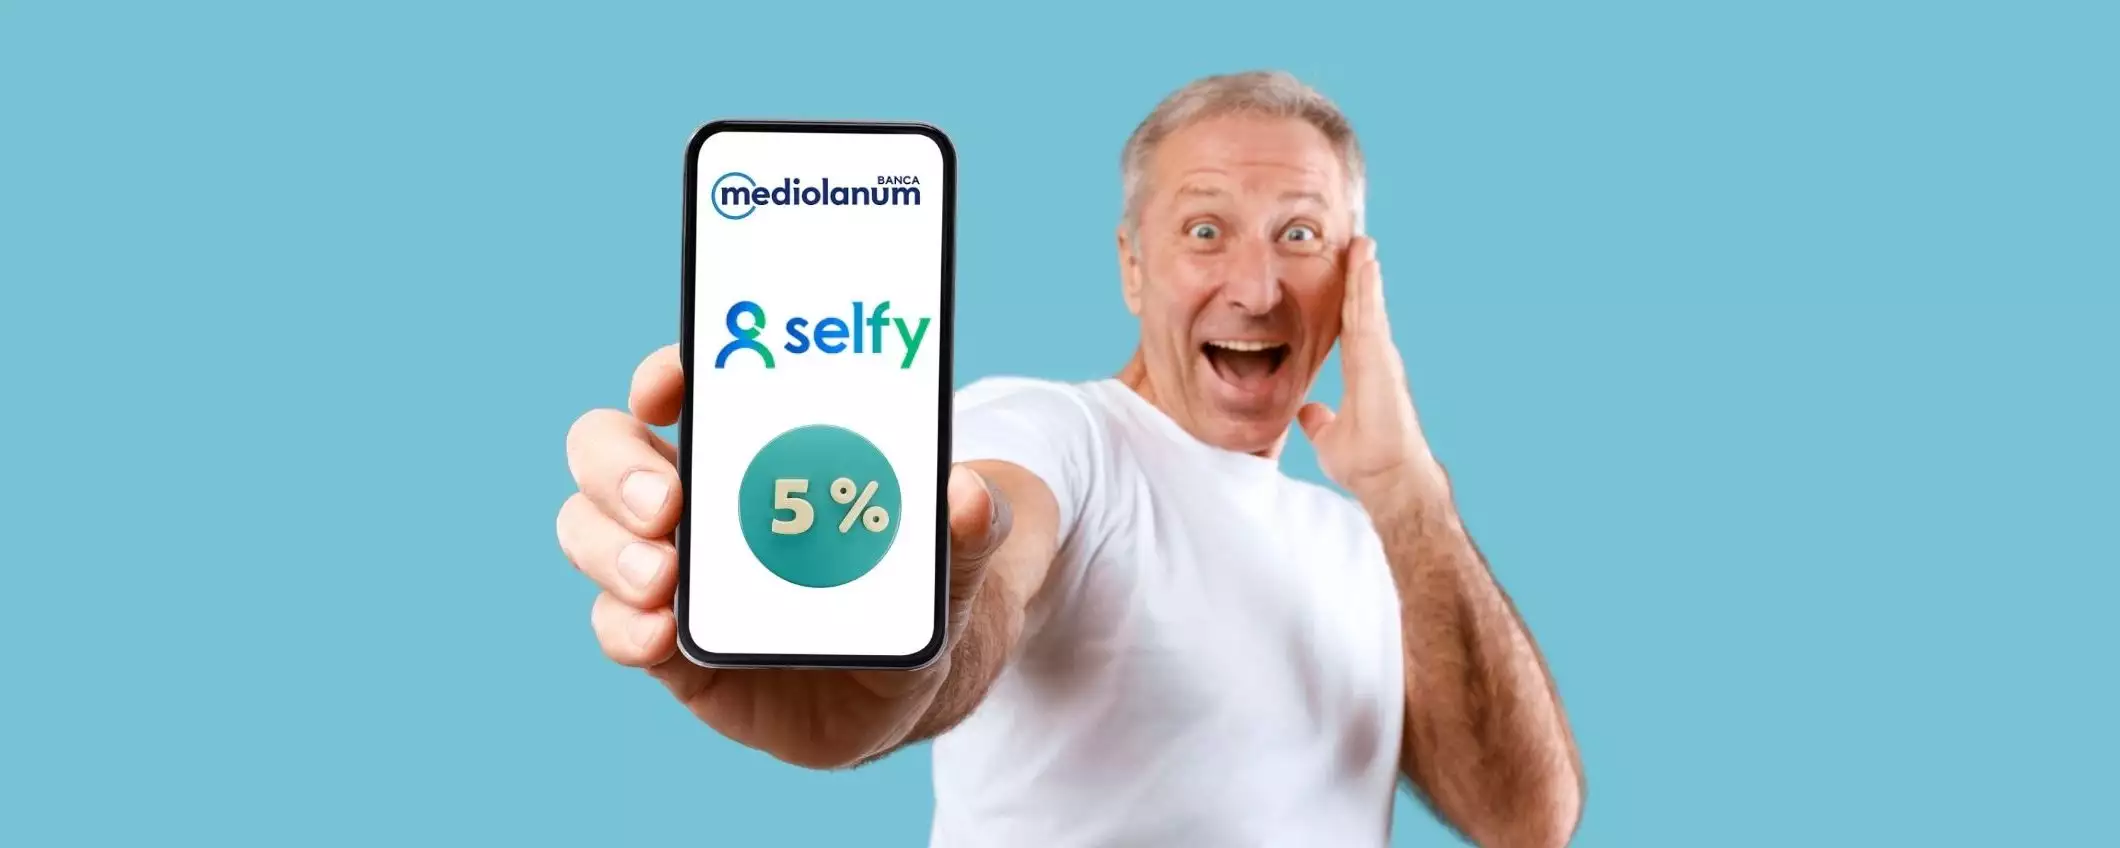 SelfyConto: il conto senza spese e con il 5% di interesse